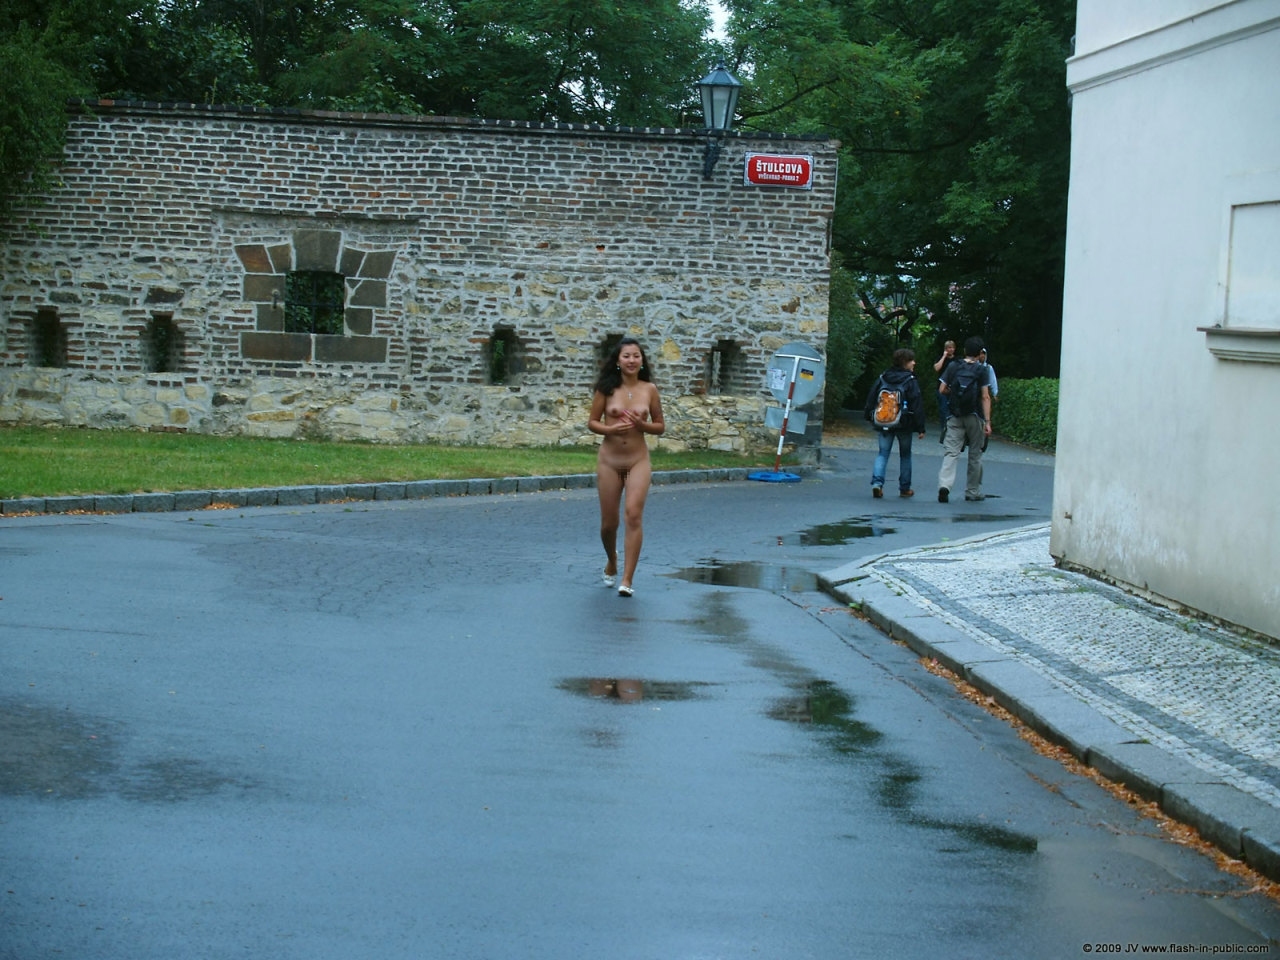 観光地で素人女性が全裸露出プレイしてる野外露出ヌード画像 5